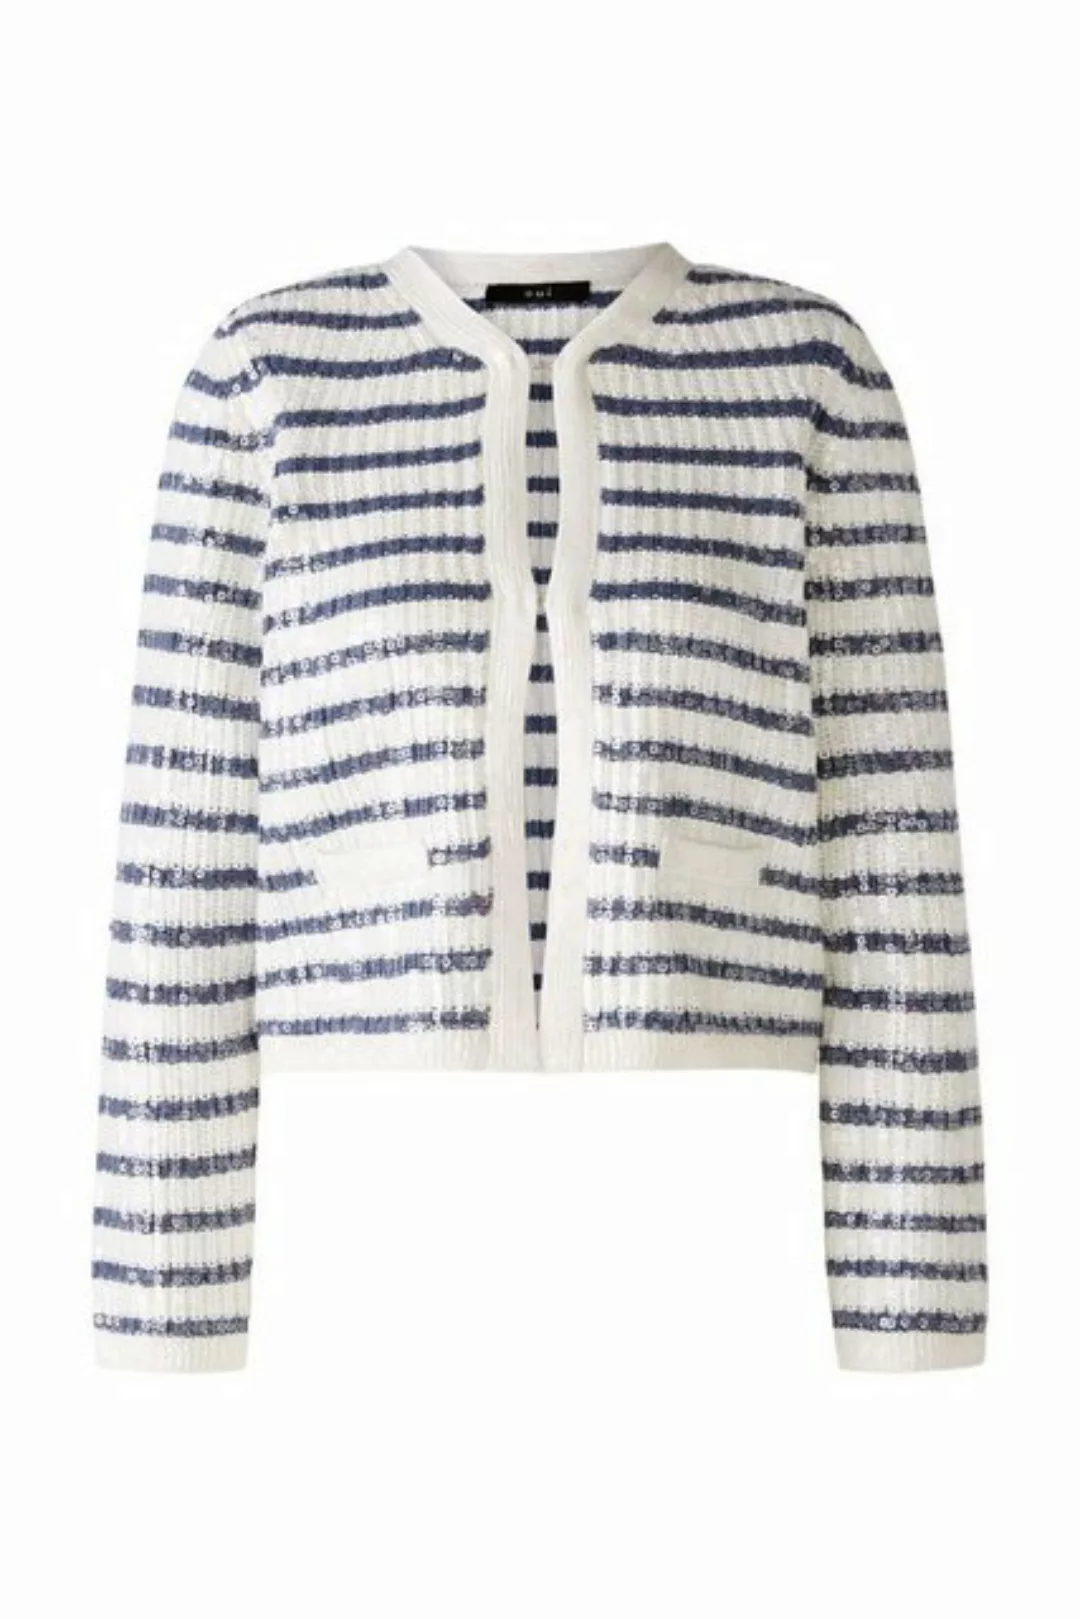 Oui Strickjacke Jacke/Jacket, blue blue günstig online kaufen